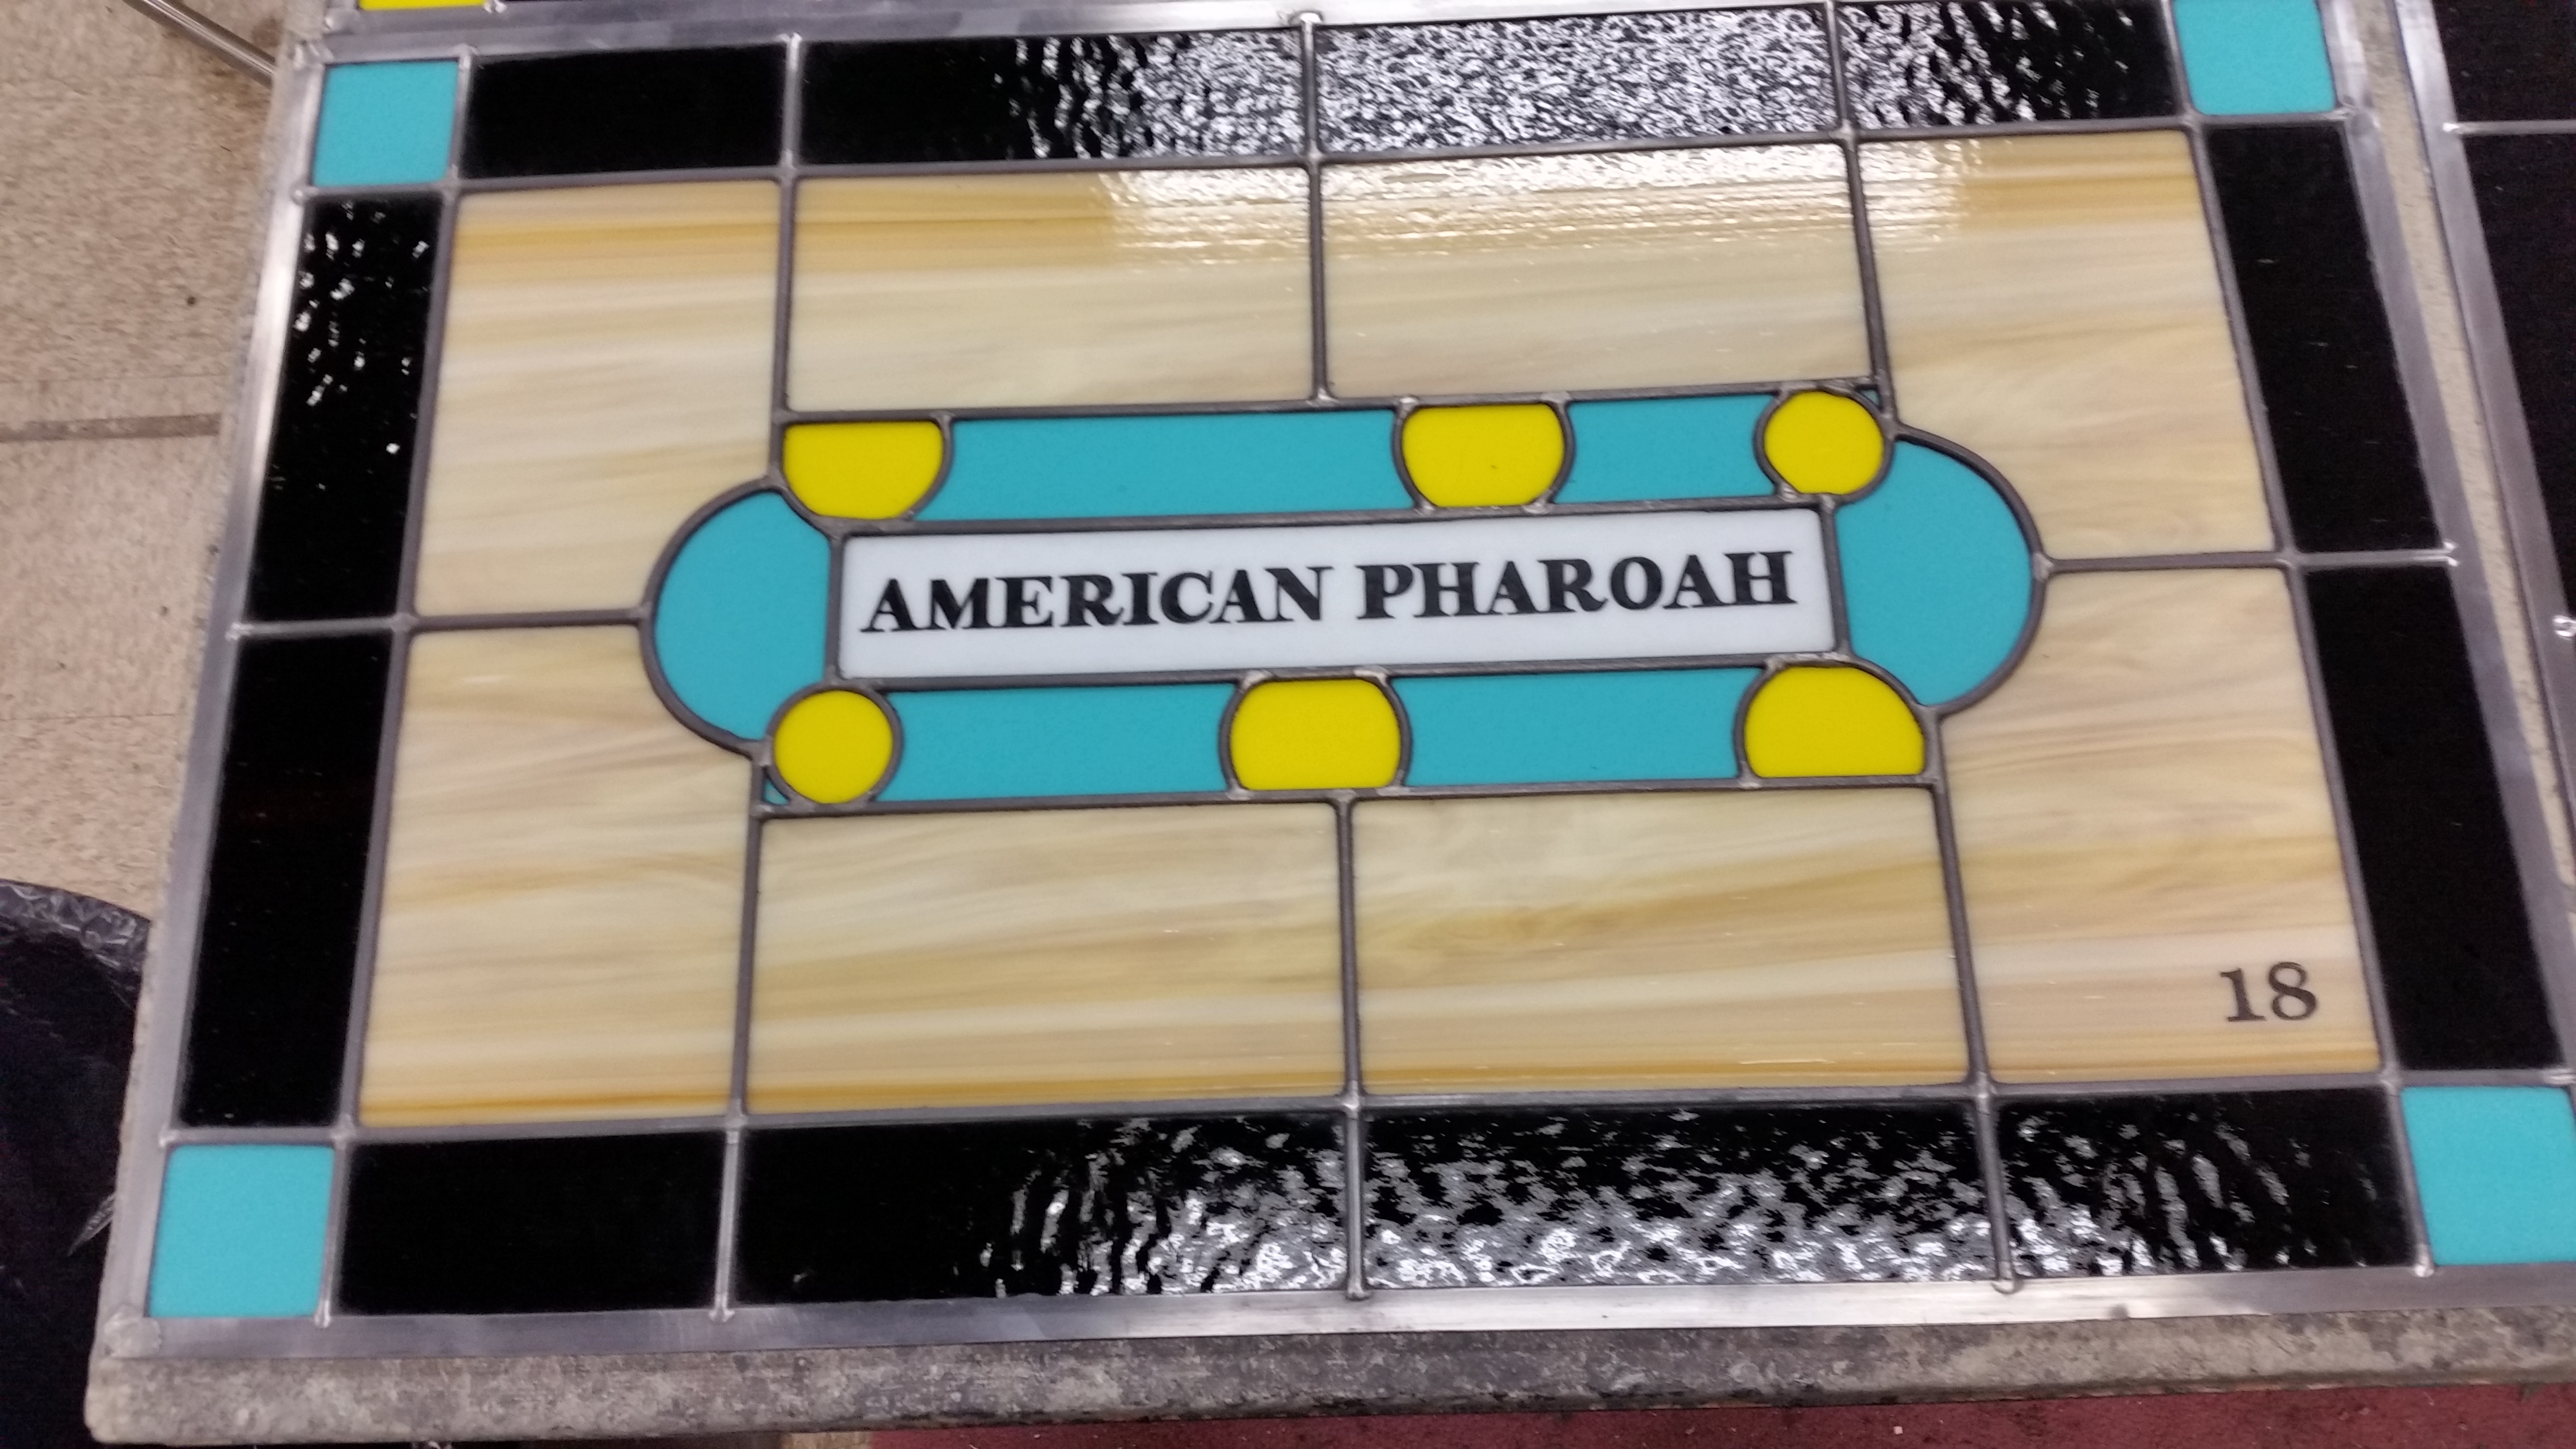 Amarican Pharoah